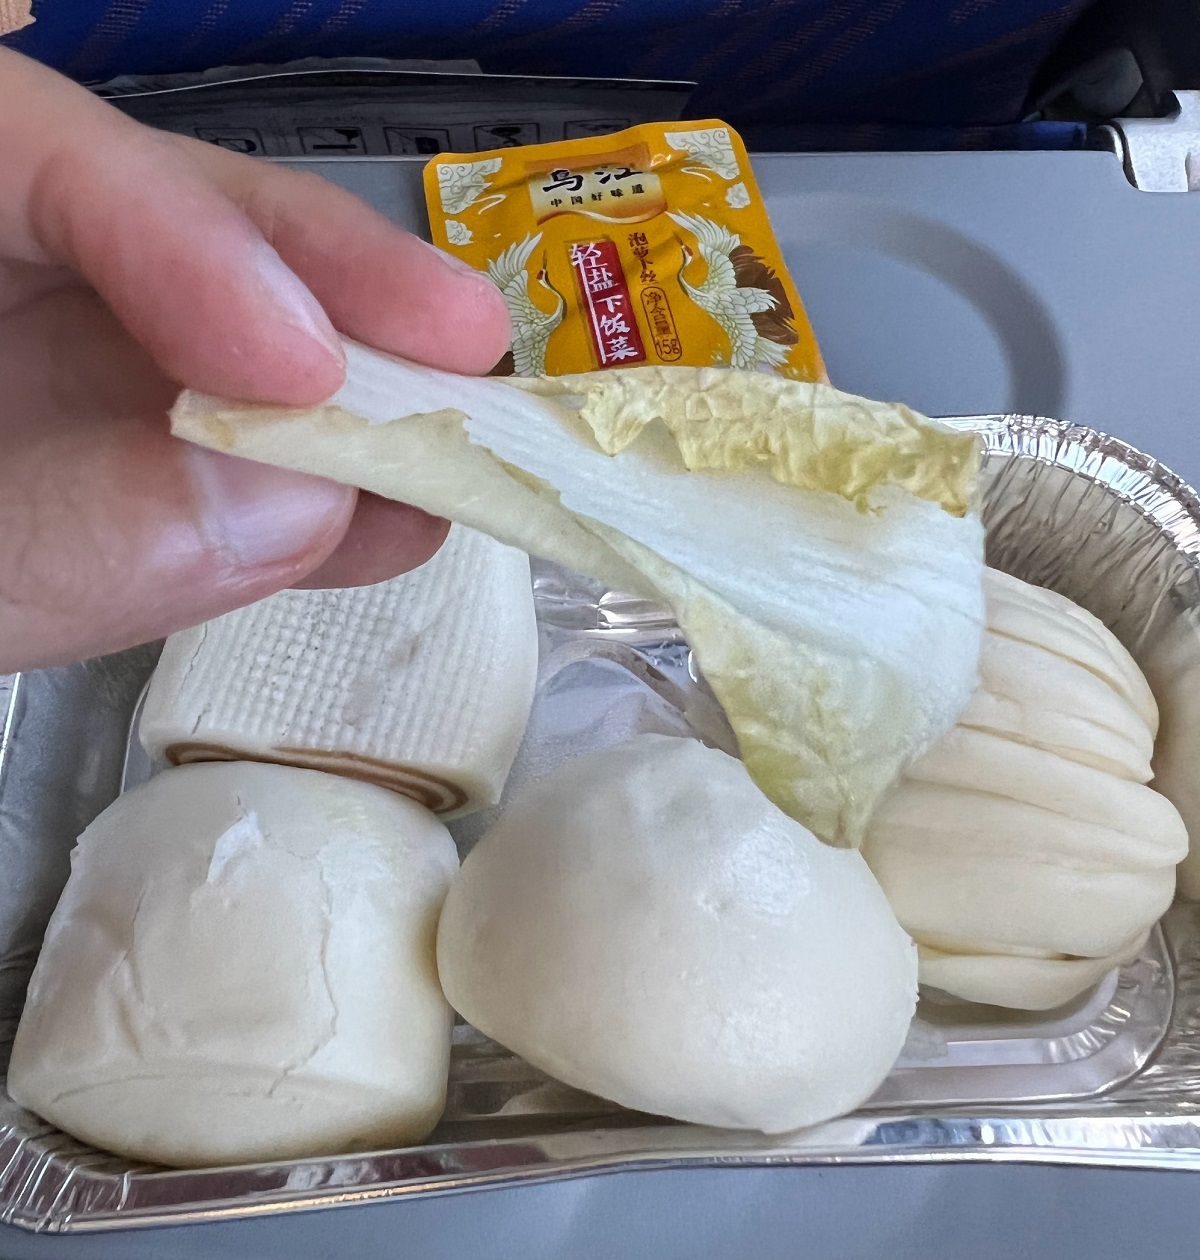 中國飛機餐「4個饅頭加1片白菜」 引發網民熱議